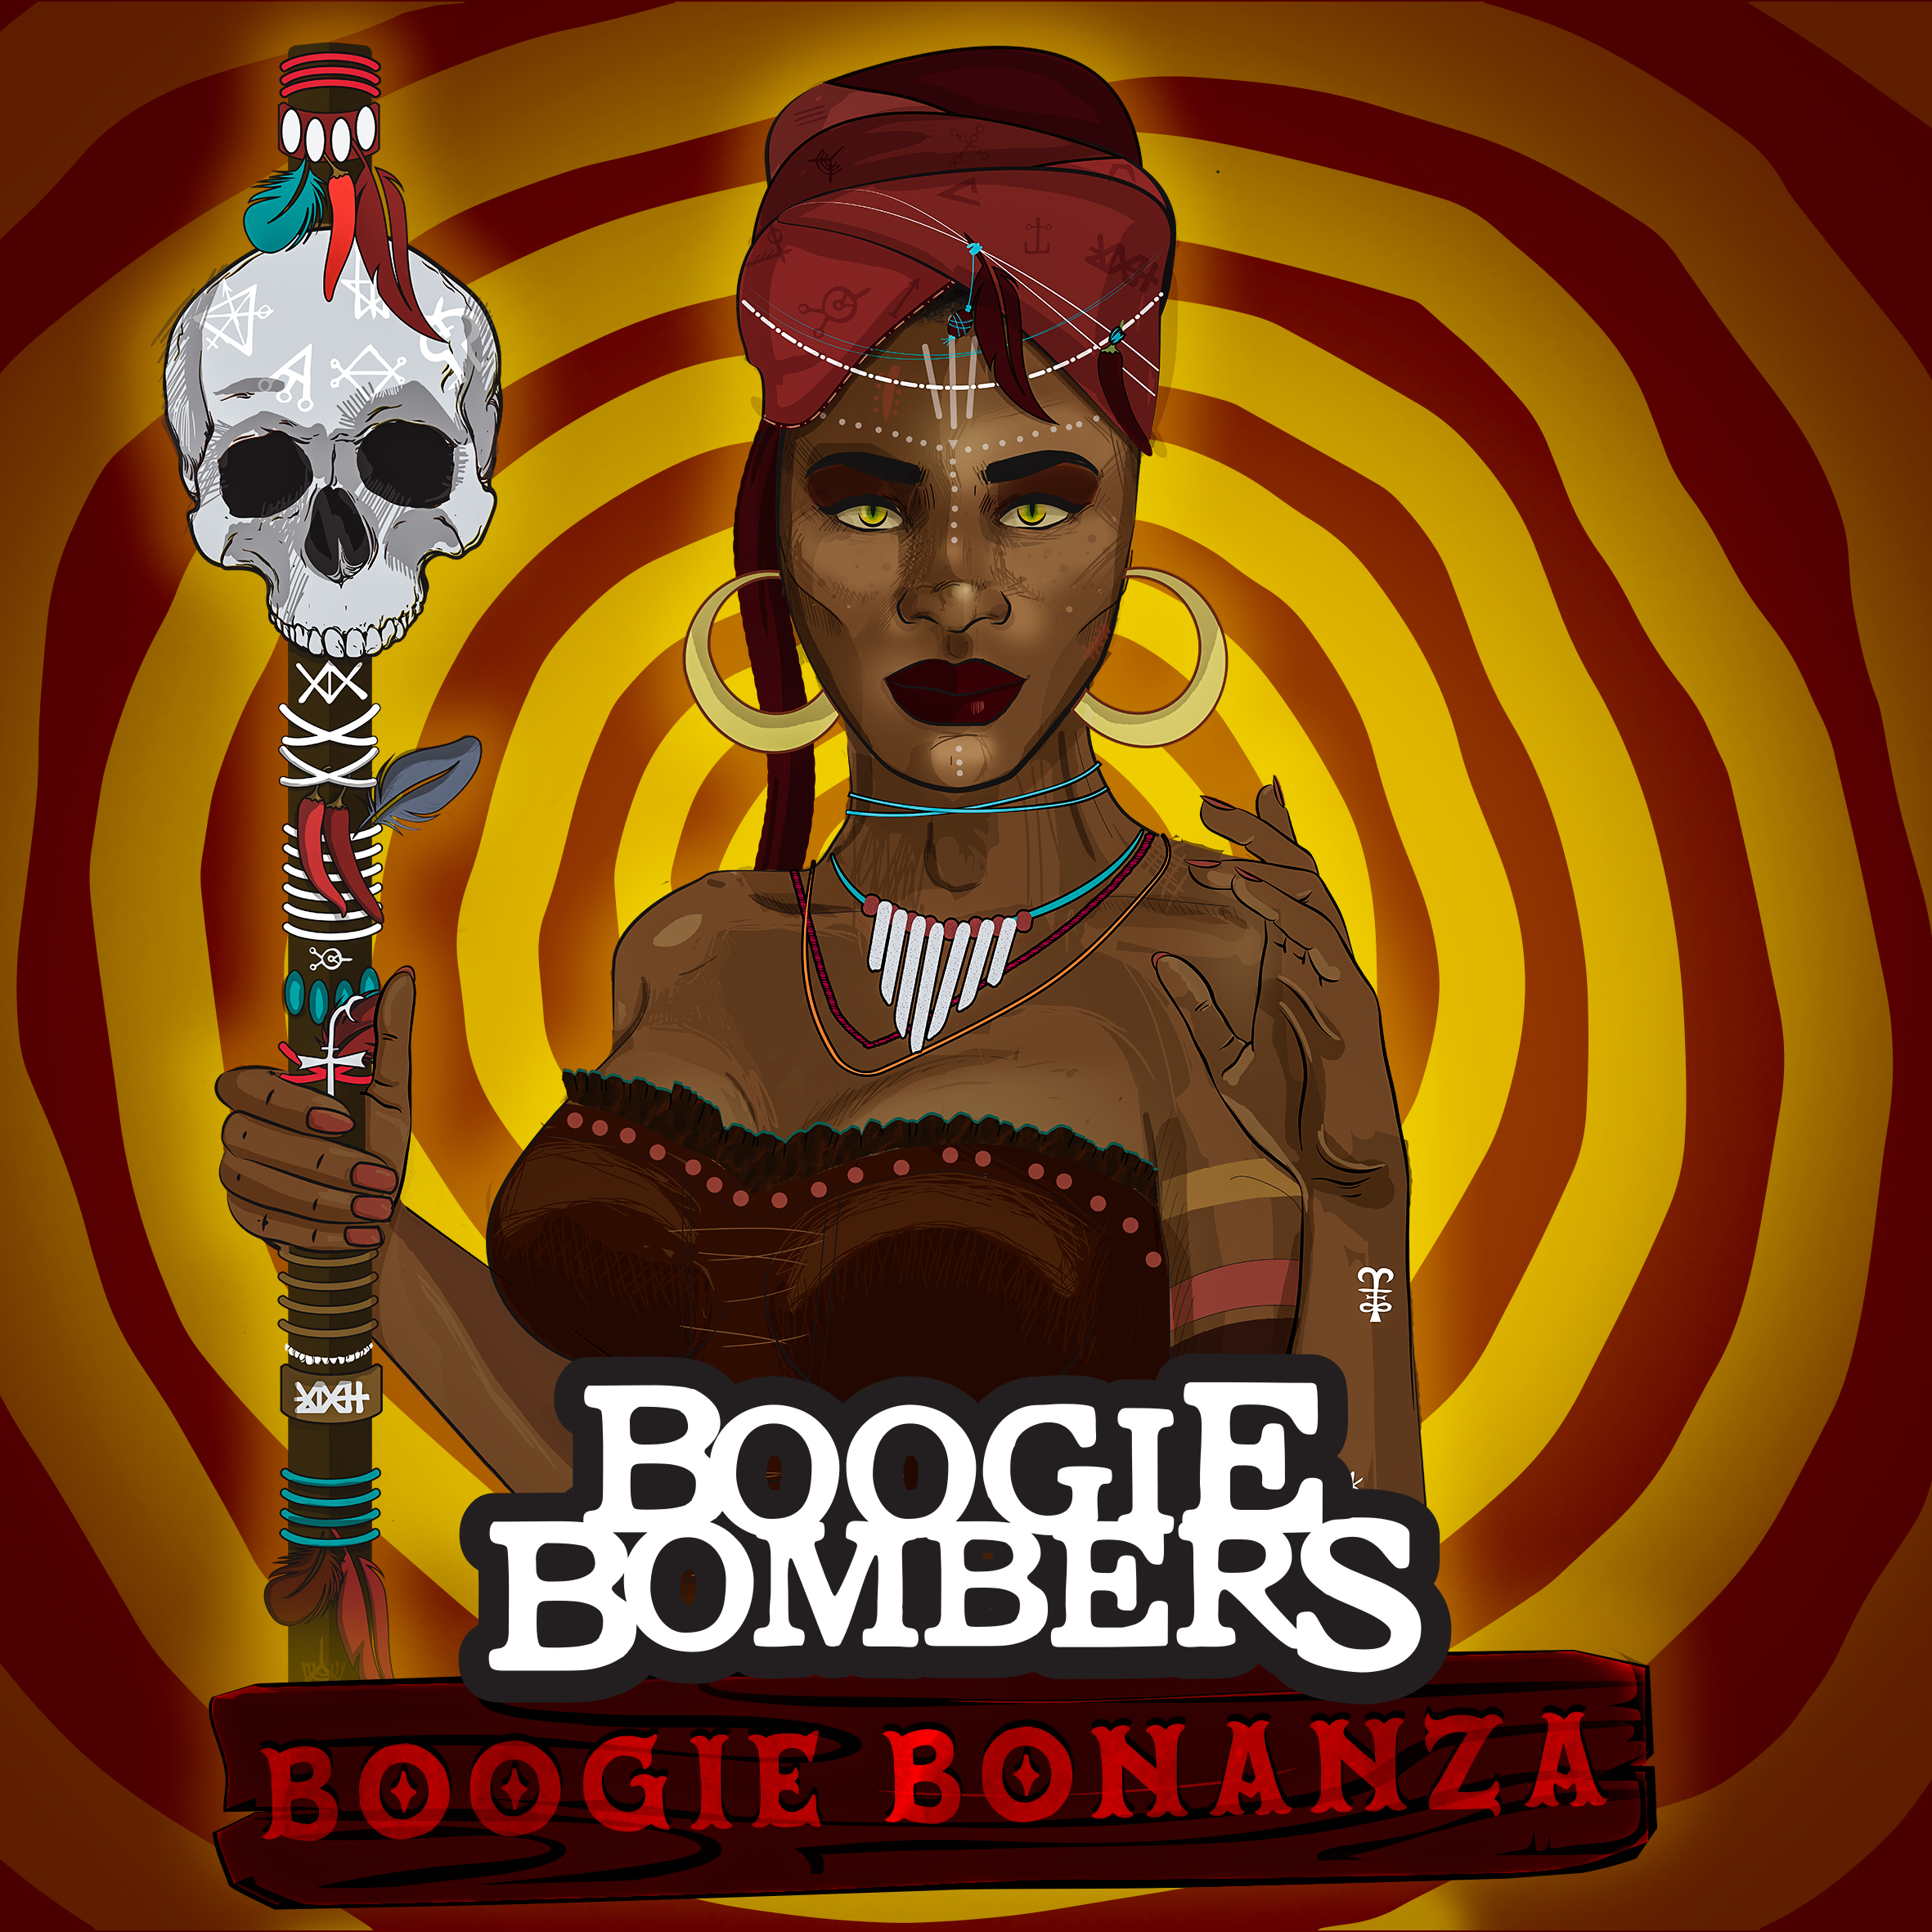 Boogie Bonanza, è uscito il nuovo disco dei Boogie Bombers